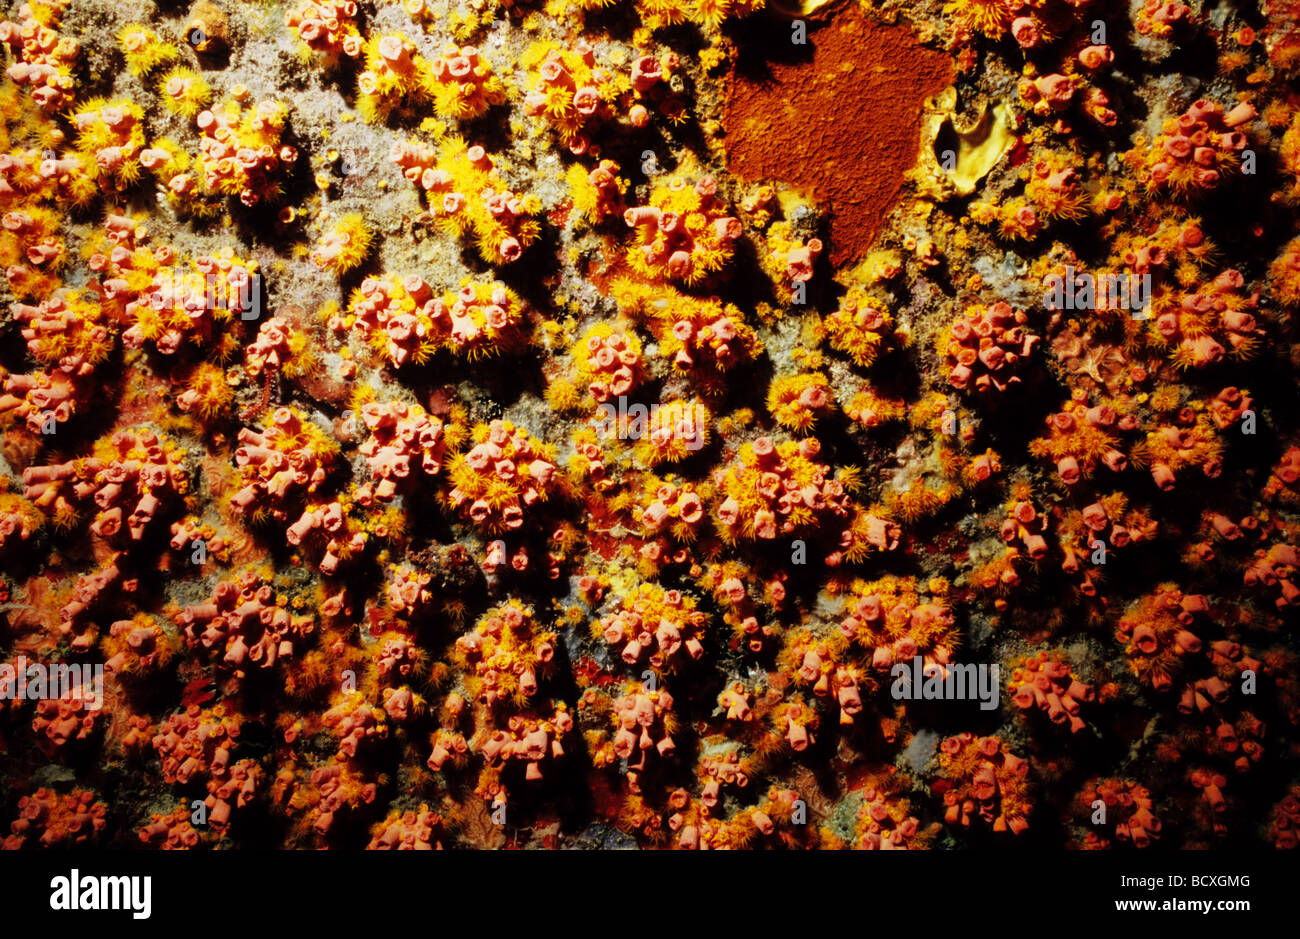 Erstaunliche Unterwasserwelt Unterwasserwelt von Grenada, West Indies. Tubastra. Tasse Korallen. Nesseltieren, Mitglieder dieser Gruppe Phylum. Stockfoto